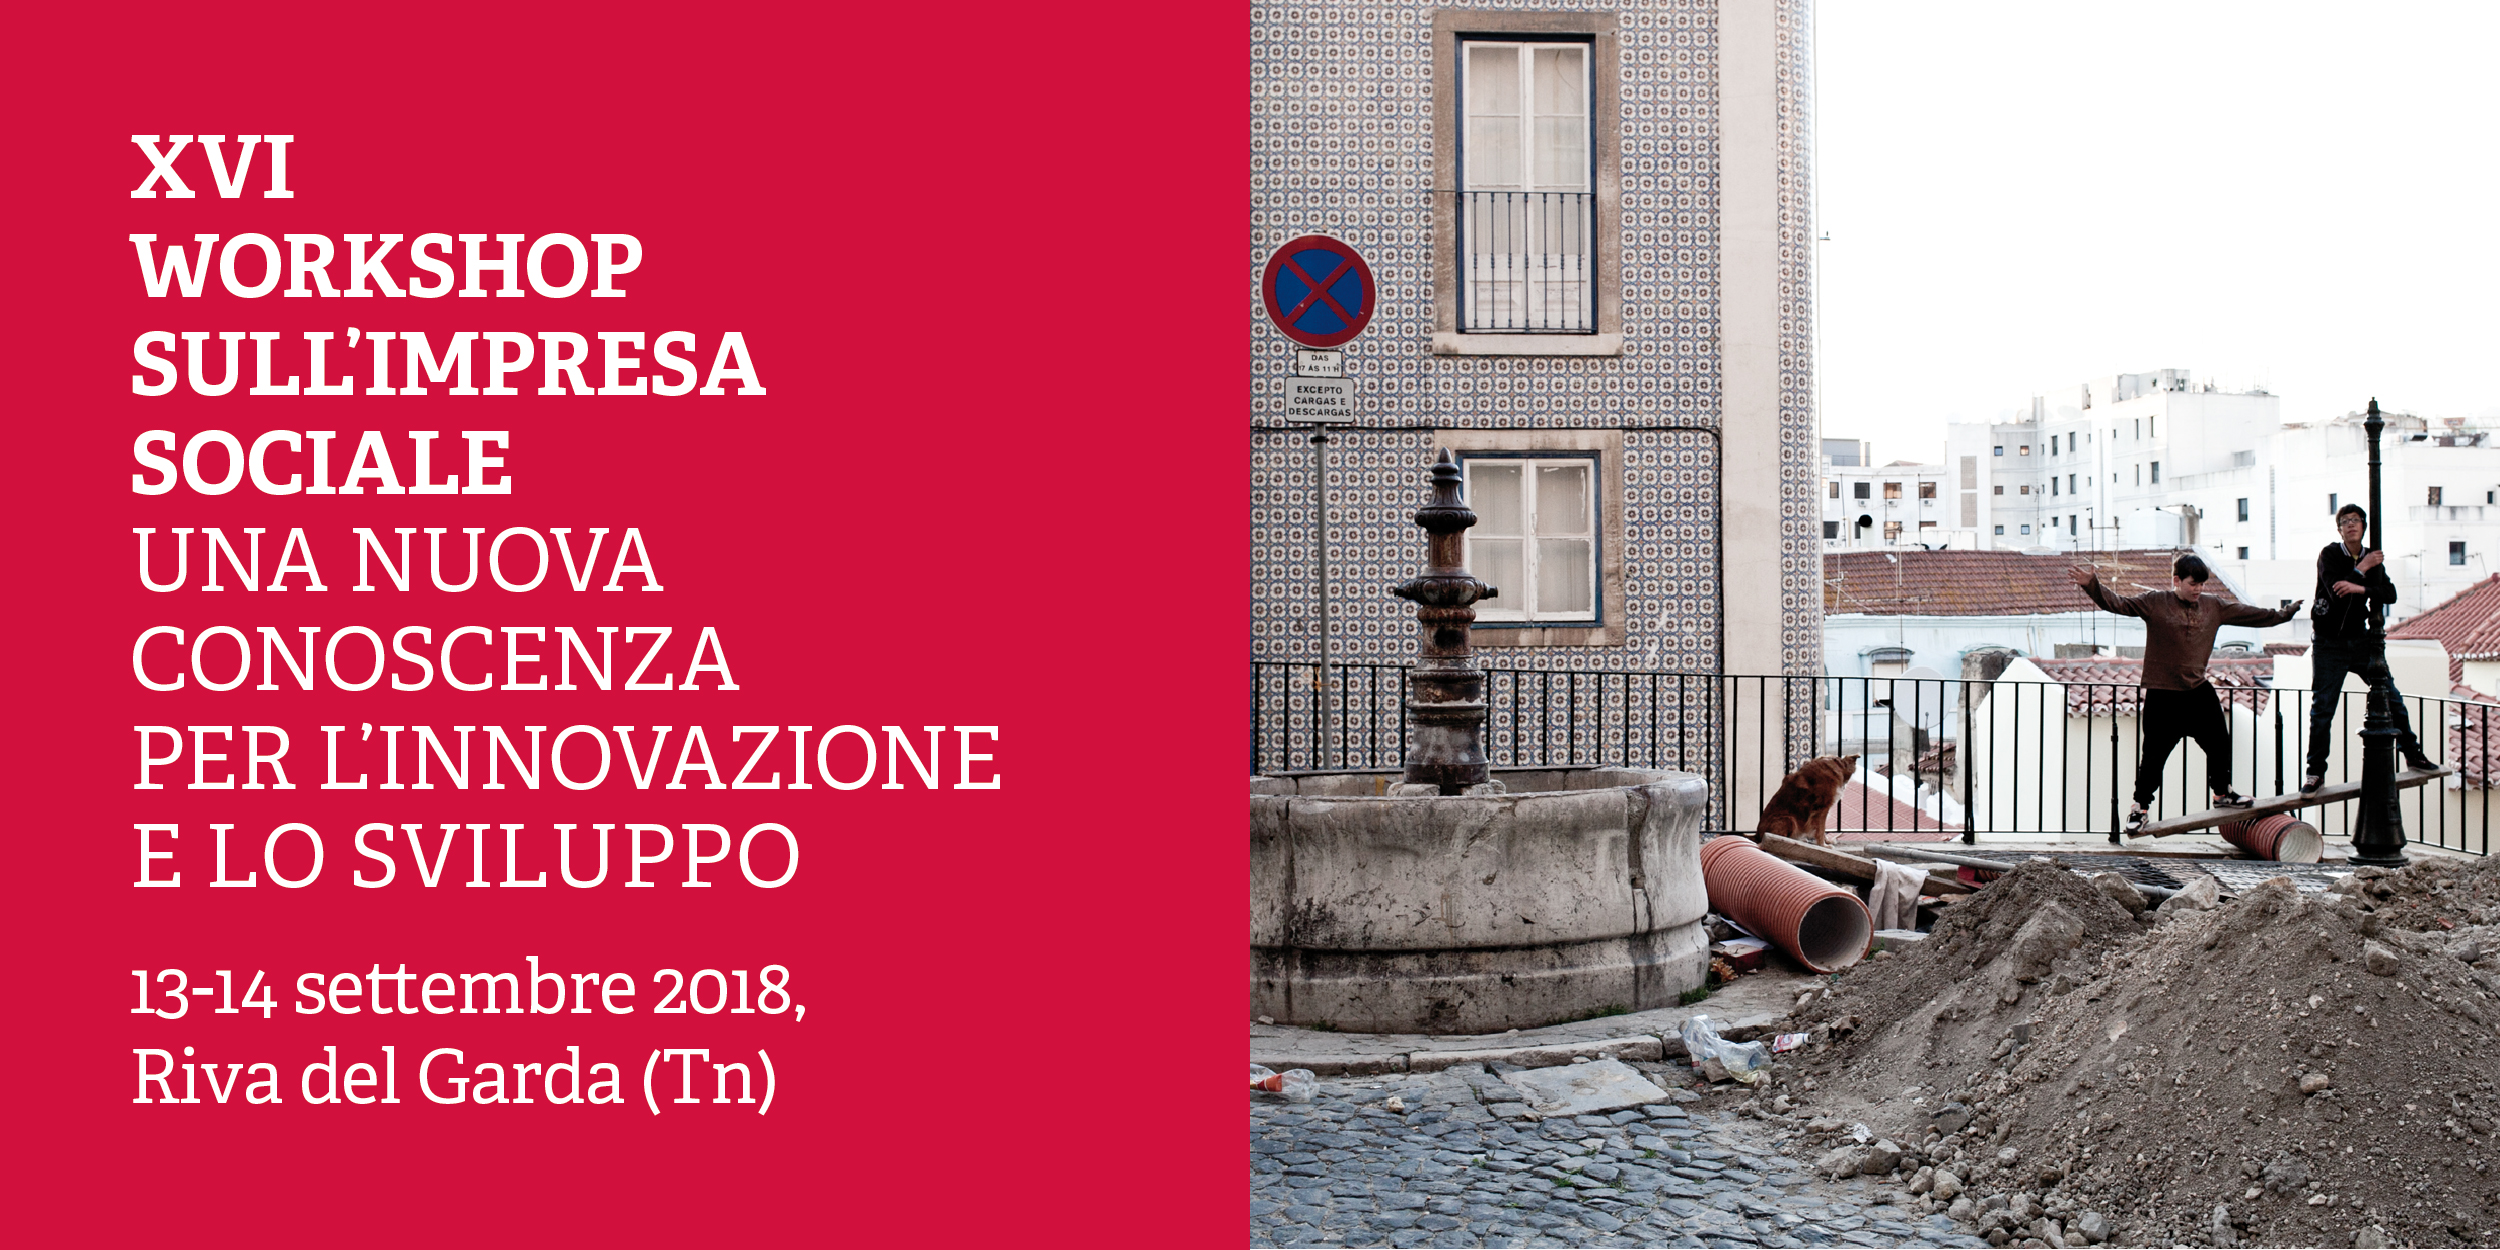 XVI Workshop sull’impresa sociale, il 13-14 settembre 2018 a Riva del Garda